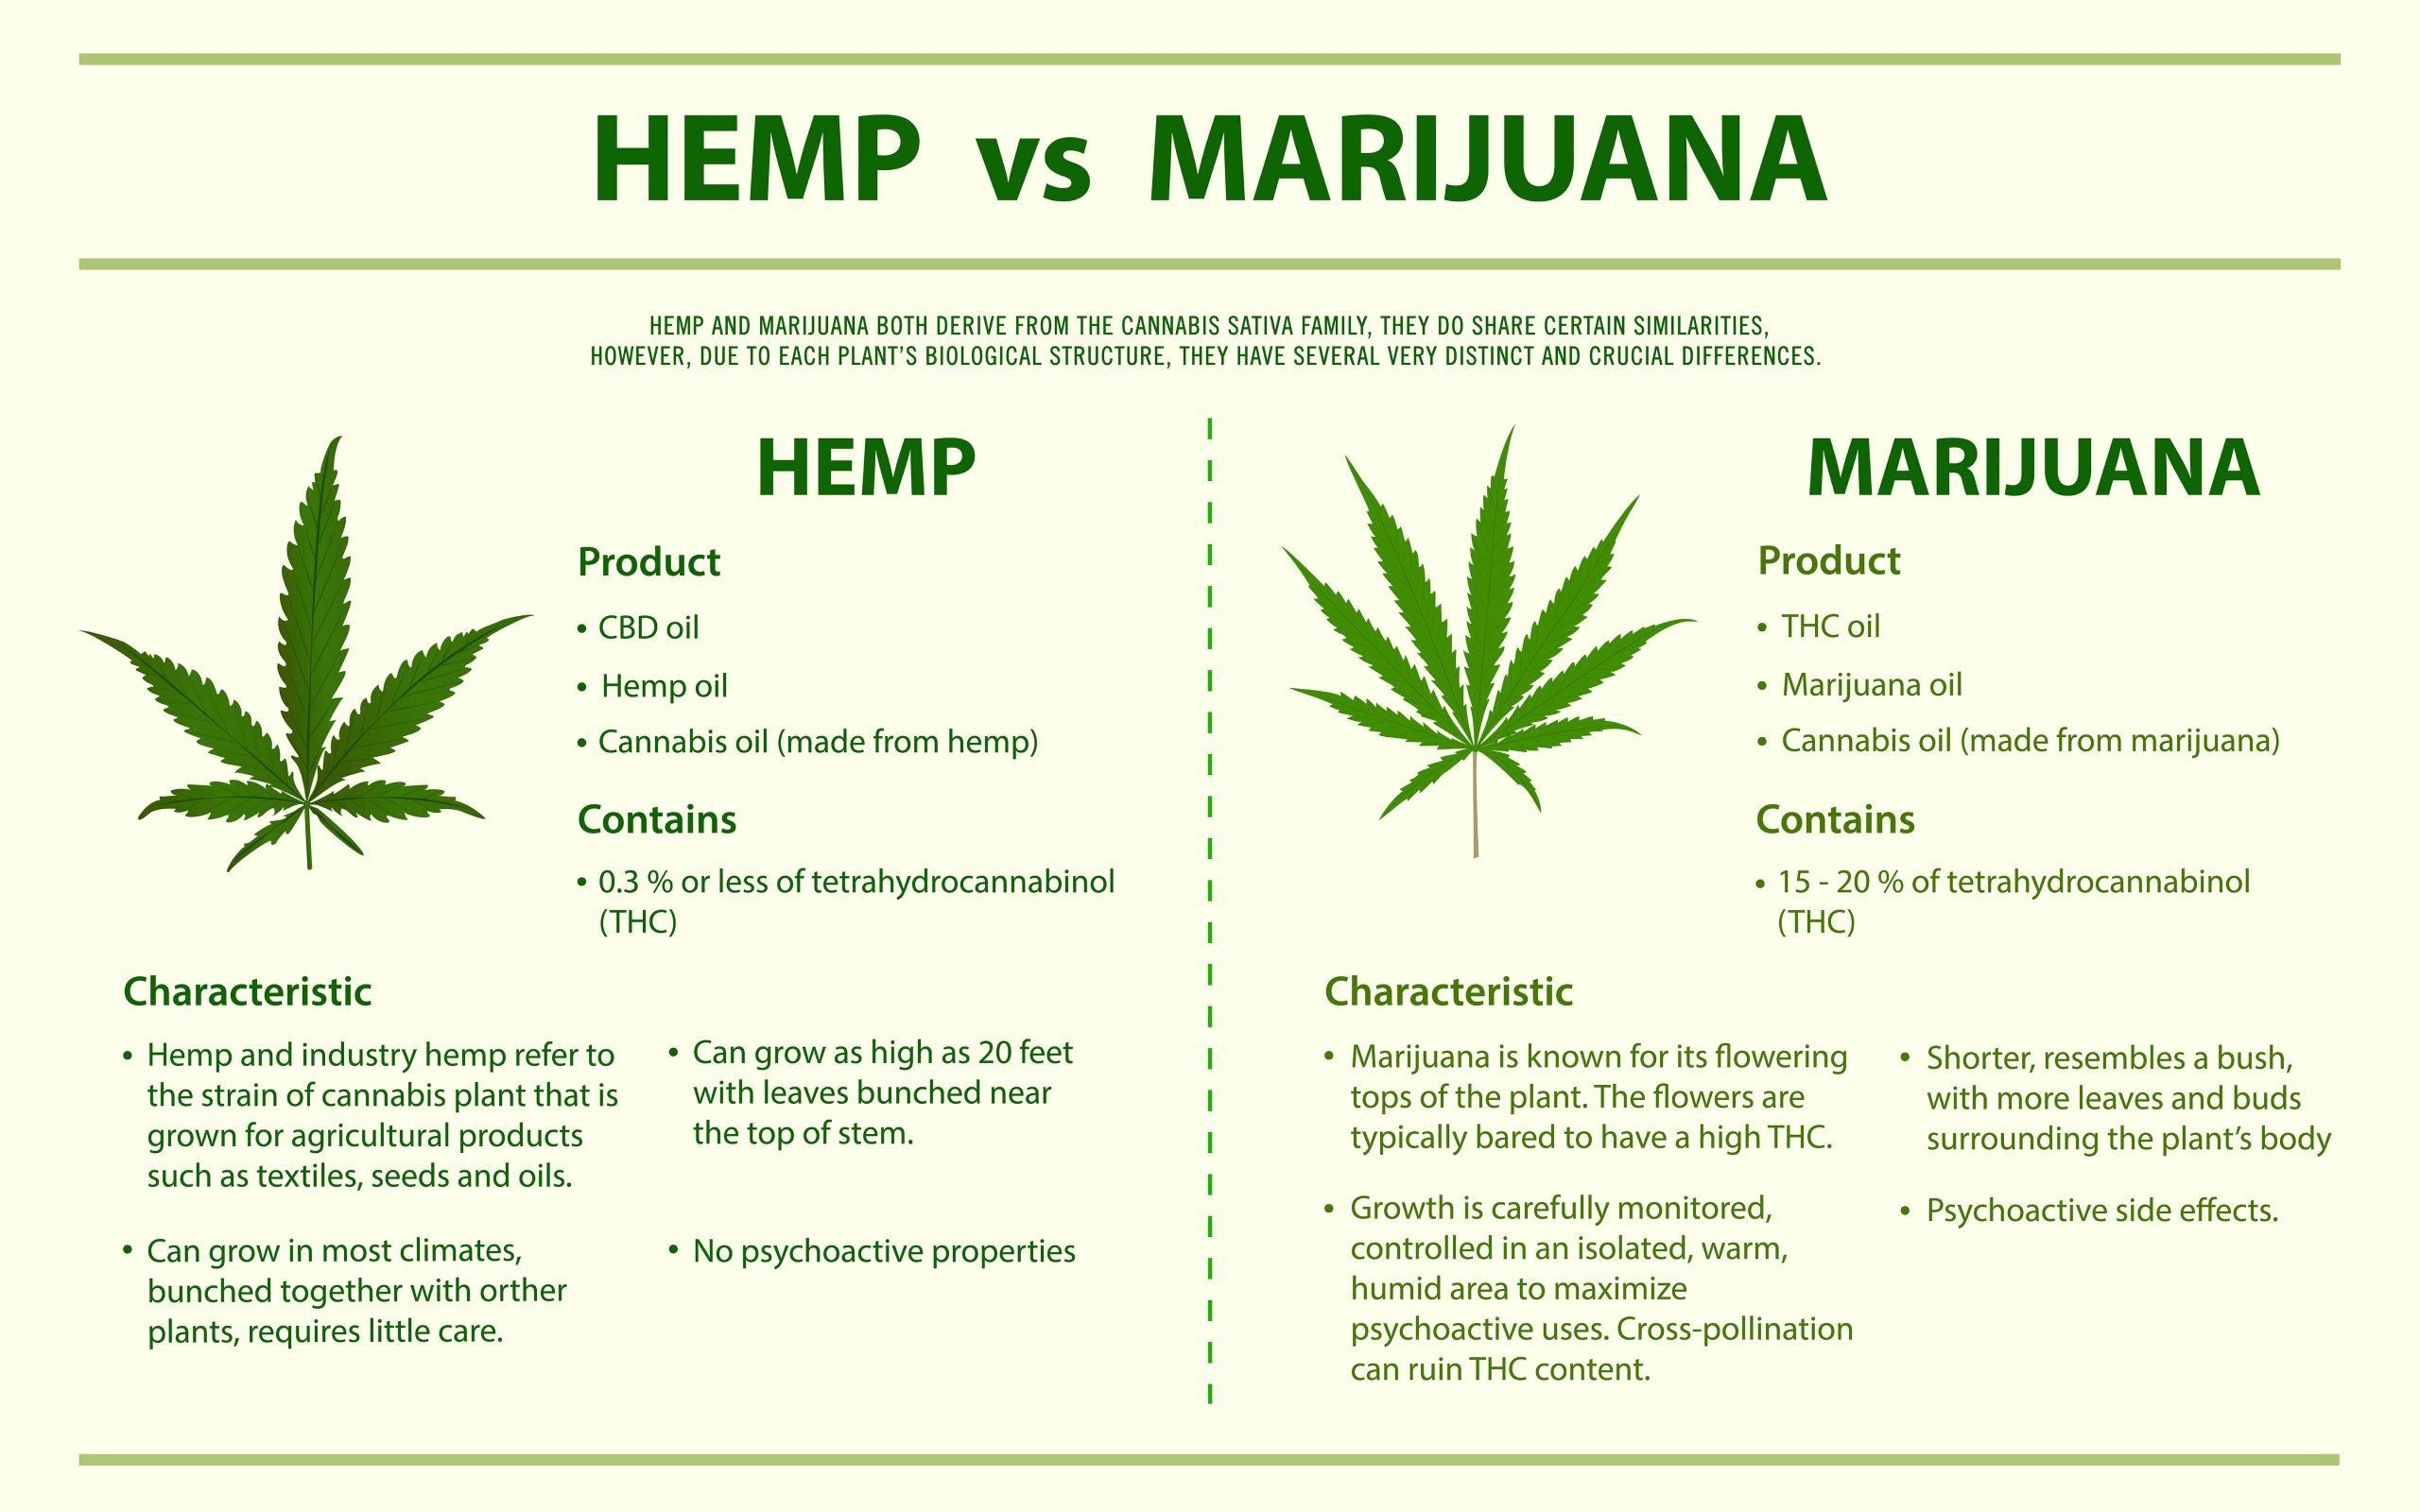 Hemp vs Marijuana horizontal infographic